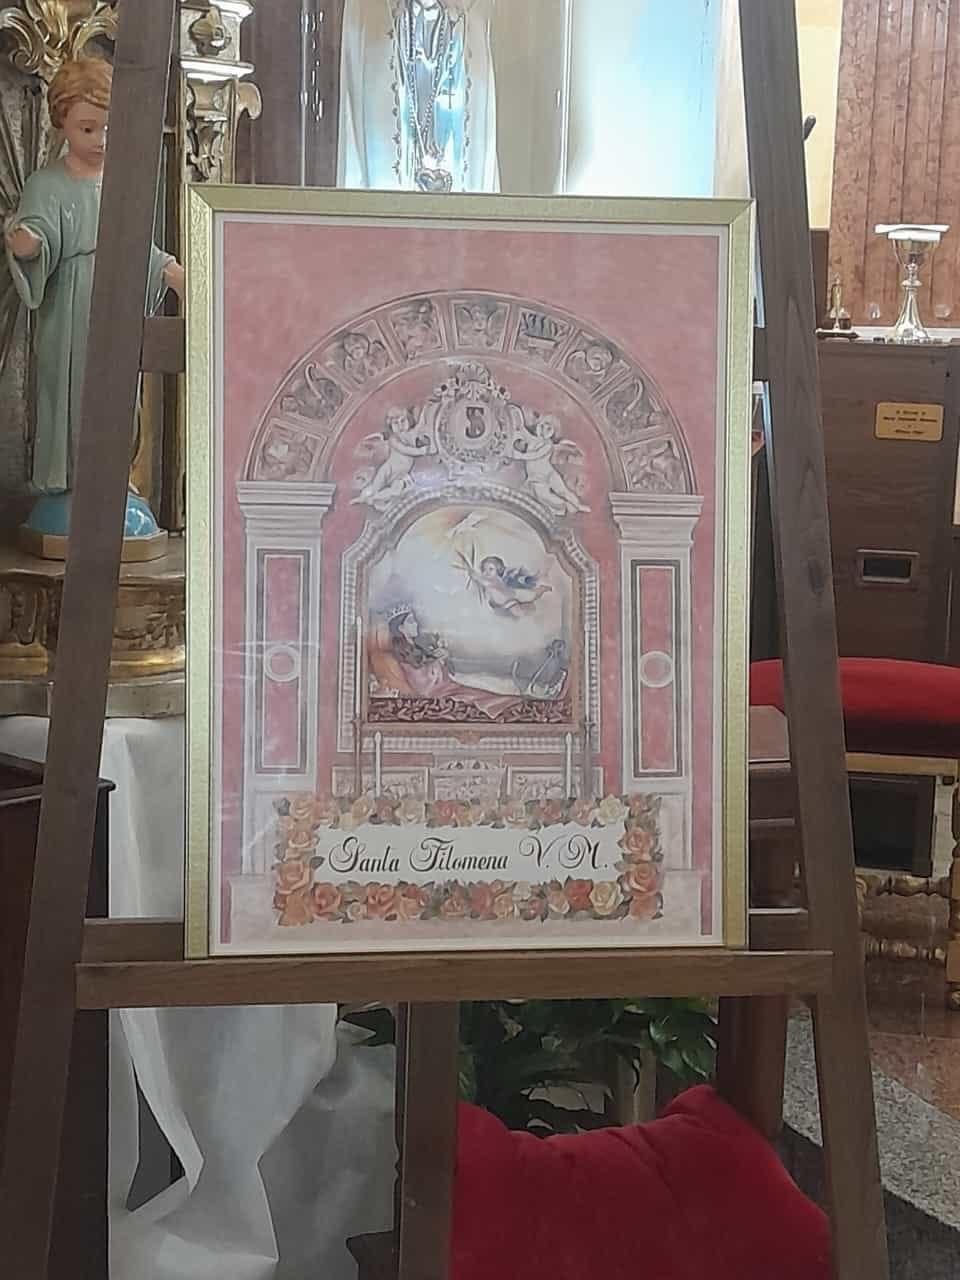 Testimonianza. Nuovo gruppo di preghiera di Santa Filomena a Salerno nel Santuario della Madonna del Carmine